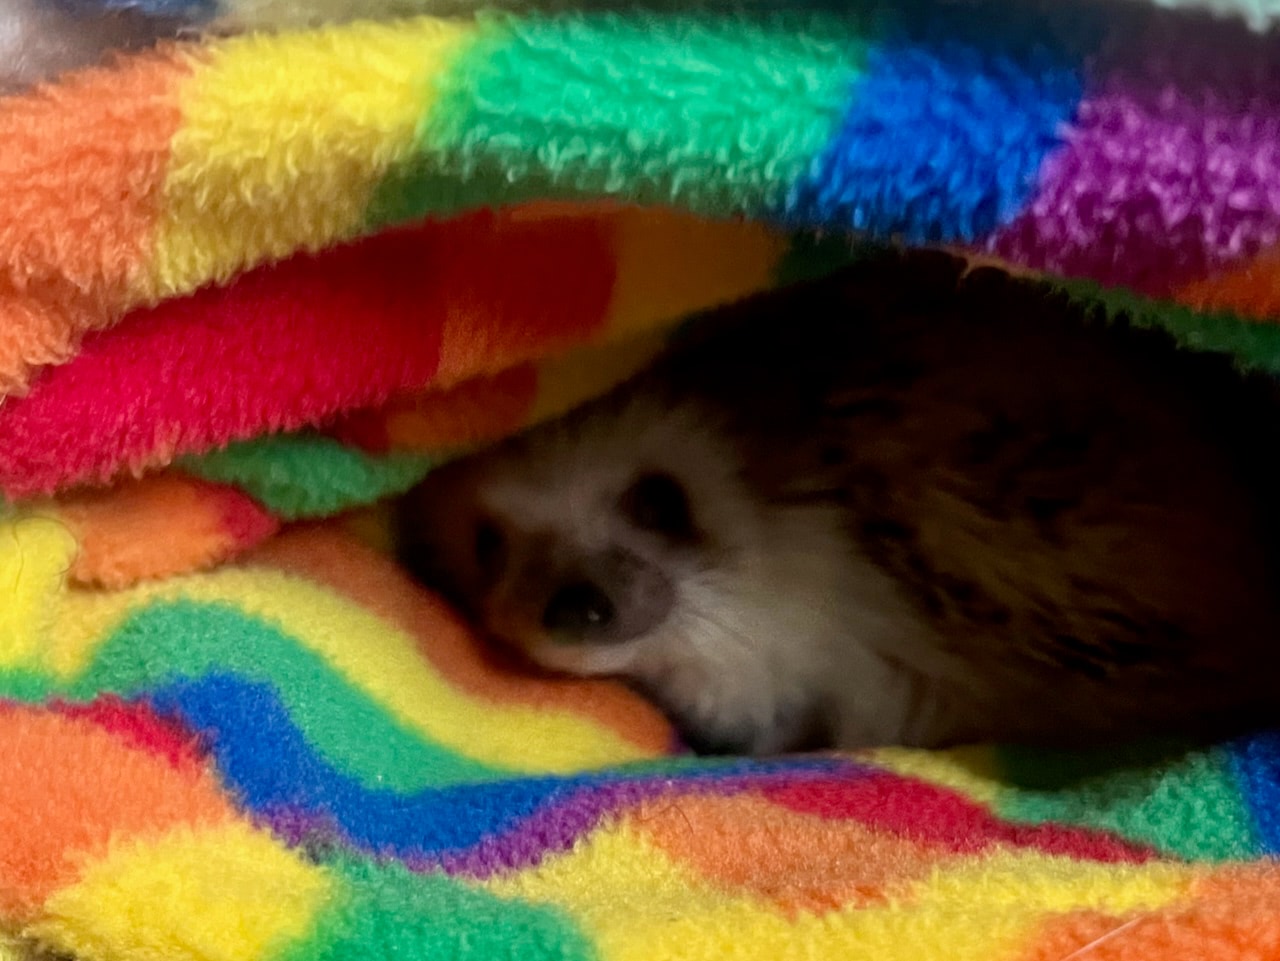 A pygmy hedgehog peeking out from folds of fleece